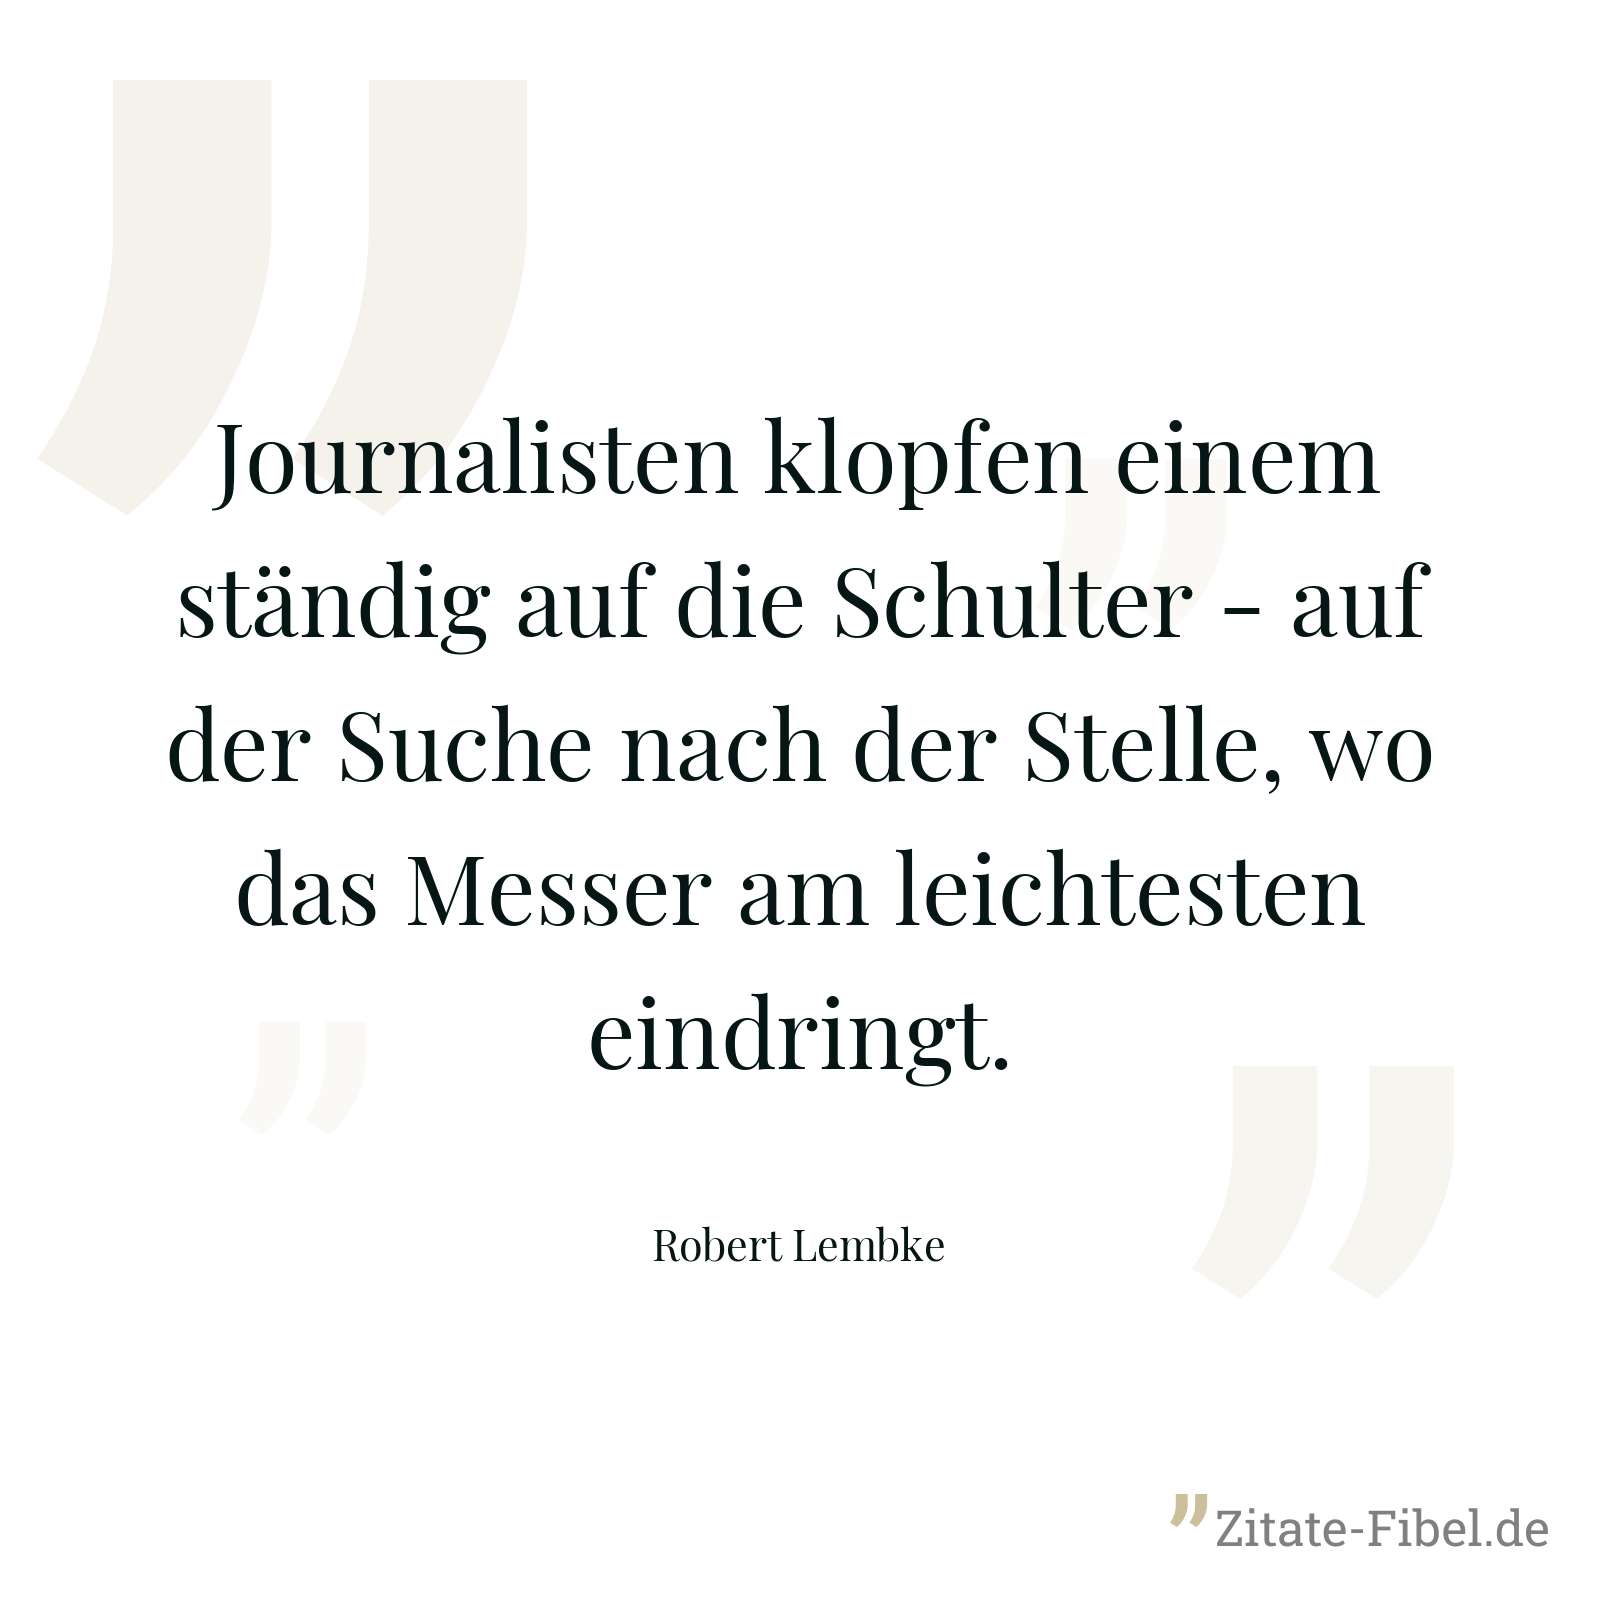 Journalisten klopfen einem ständig auf die Schulter - auf der Suche nach der Stelle, wo das Messer am leichtesten eindringt. - Robert Lembke